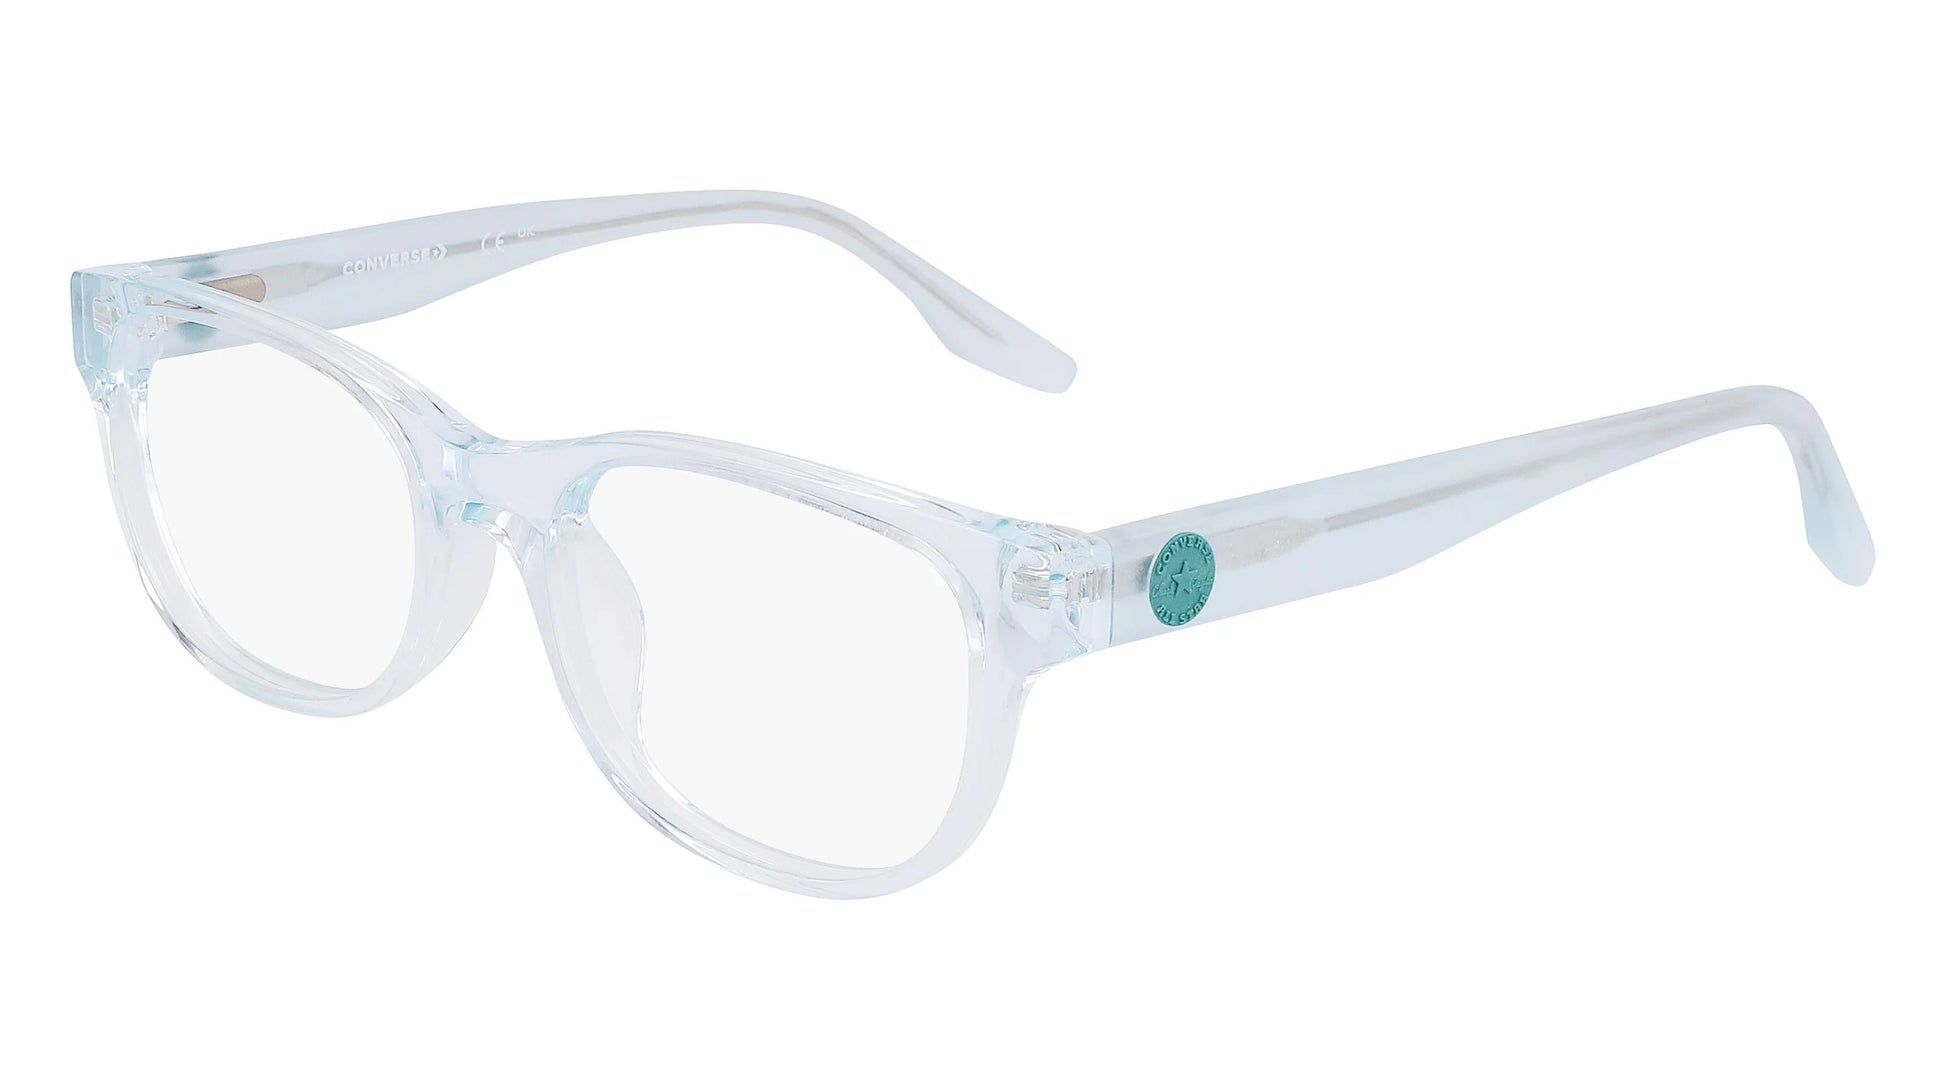 Converse CV5073Y Eyeglasses Crystal Aqua Mist